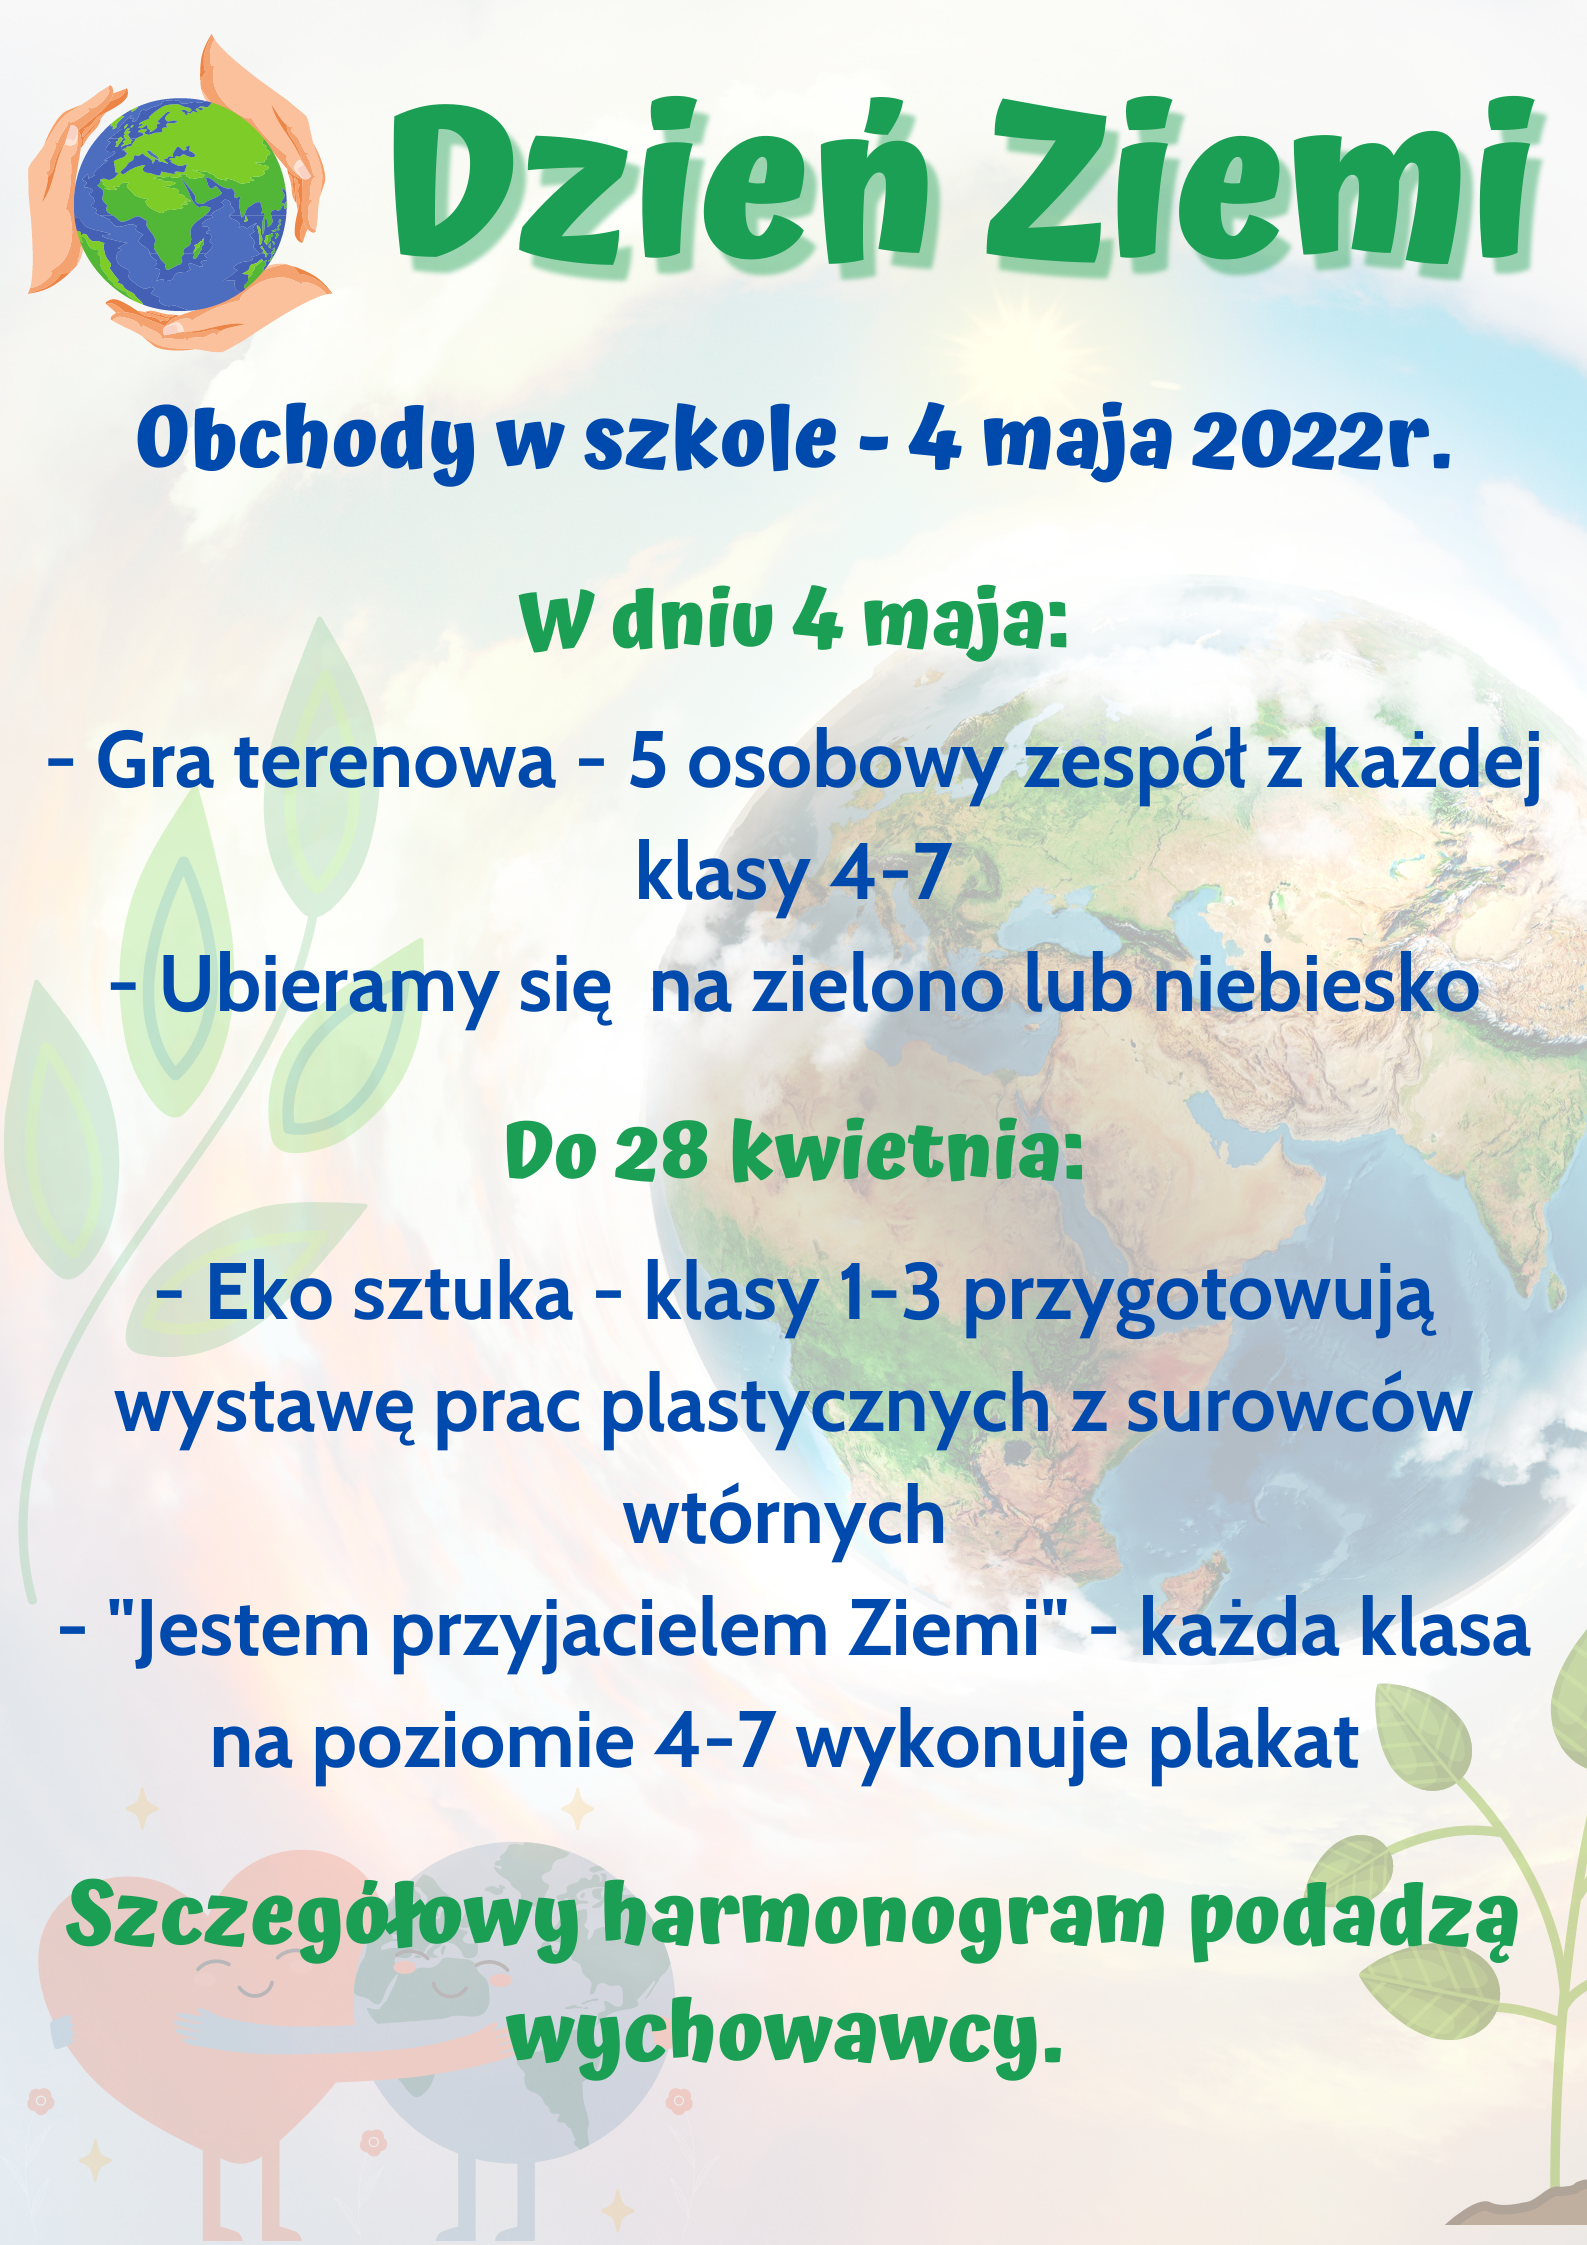 Plakat zawiera informacje zawarte w tekście na temat obchodów Dnia Ziemi w szkole.